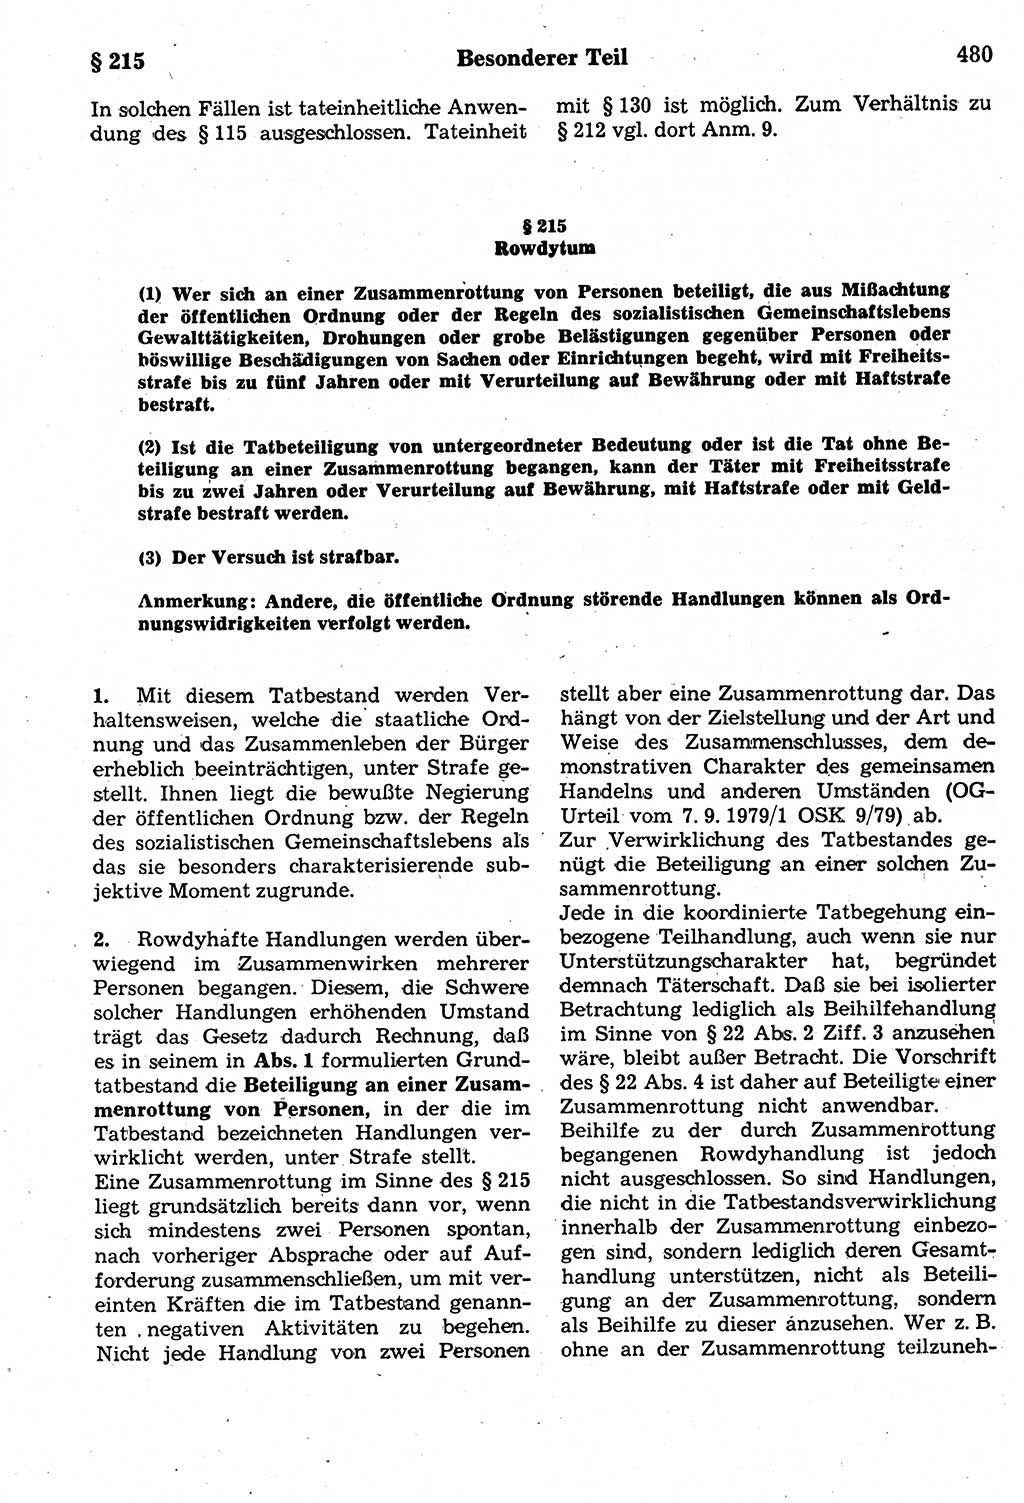 Strafrecht der Deutschen Demokratischen Republik (DDR), Kommentar zum Strafgesetzbuch (StGB) 1987, Seite 480 (Strafr. DDR Komm. StGB 1987, S. 480)